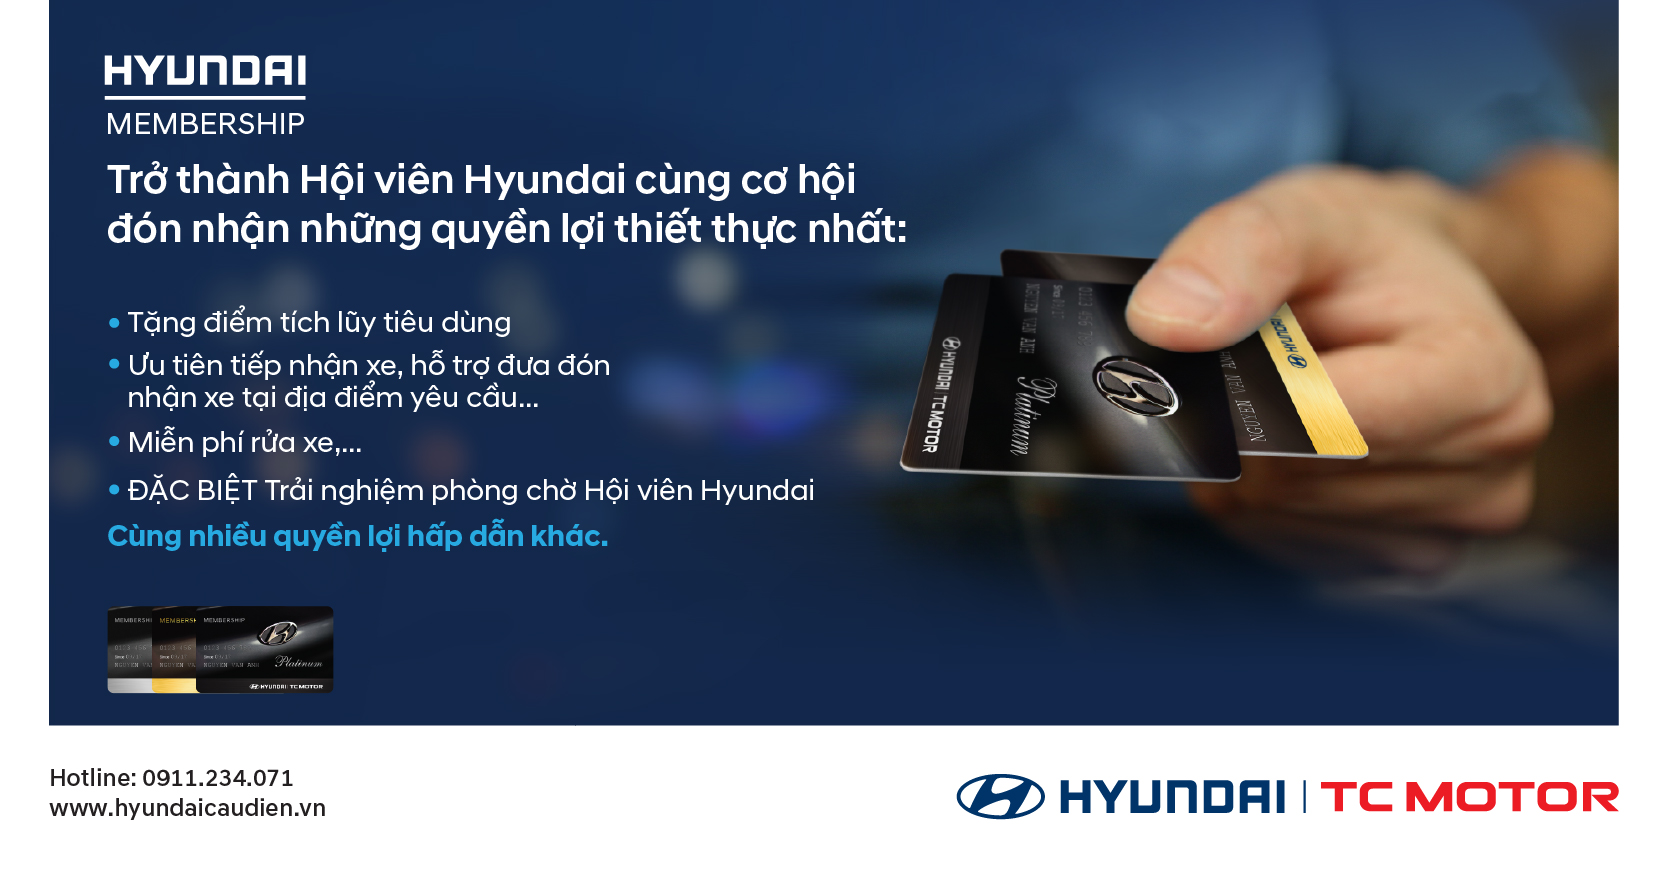 Hyundai Membership - Thêm gắn kết - gửi yêu thương